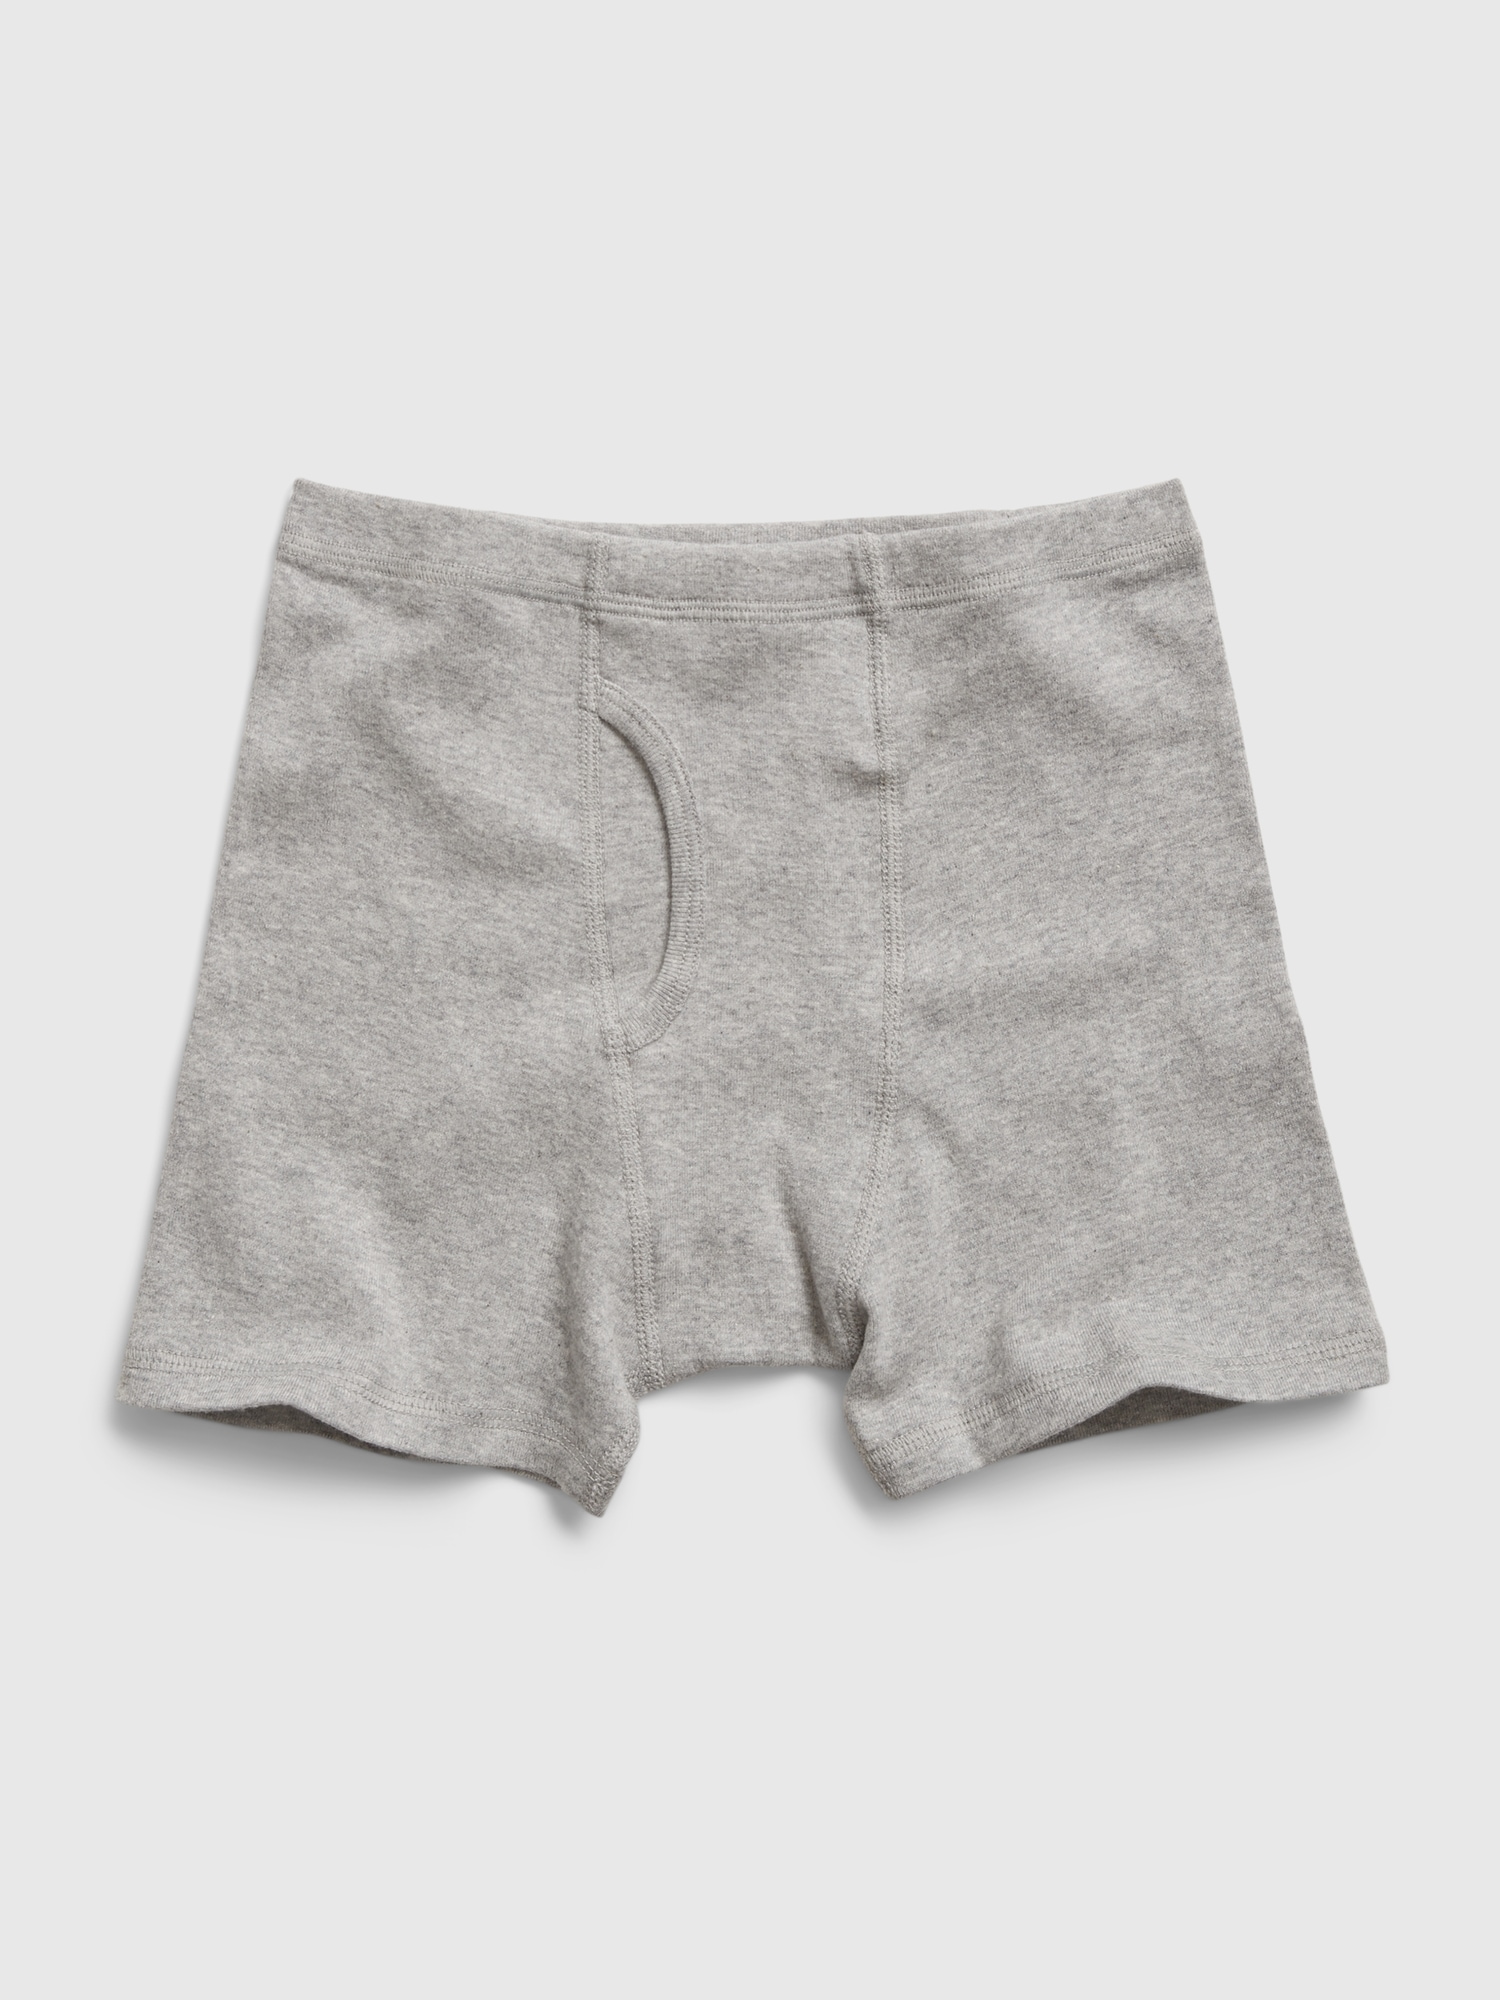 GAP GAPKIDS Boys 2-Pack Classic Briefs Underwear, MULTI-COLOR SIZE S  (X0327H)